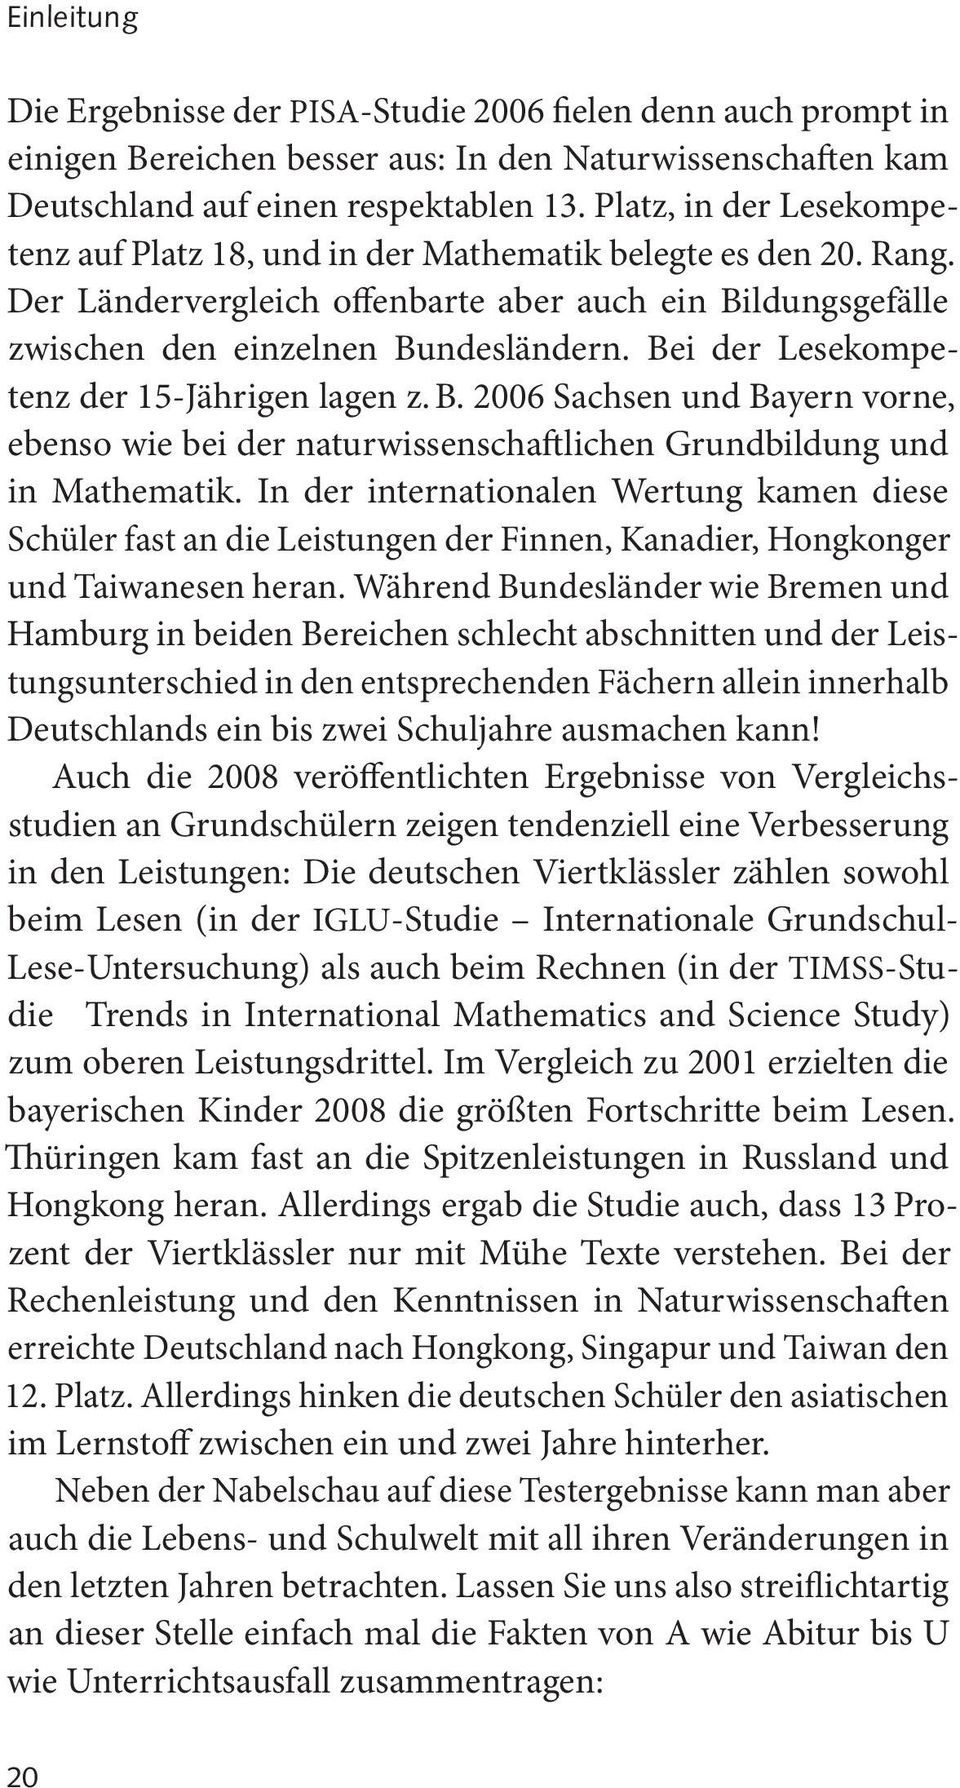 Bei der Lesekompetenz der 15-Jährigen lagen z. B. 2006 Sachsen und Bayern vorne, ebenso wie bei der naturwissenschaftlichen Grundbildung und in Mathematik.